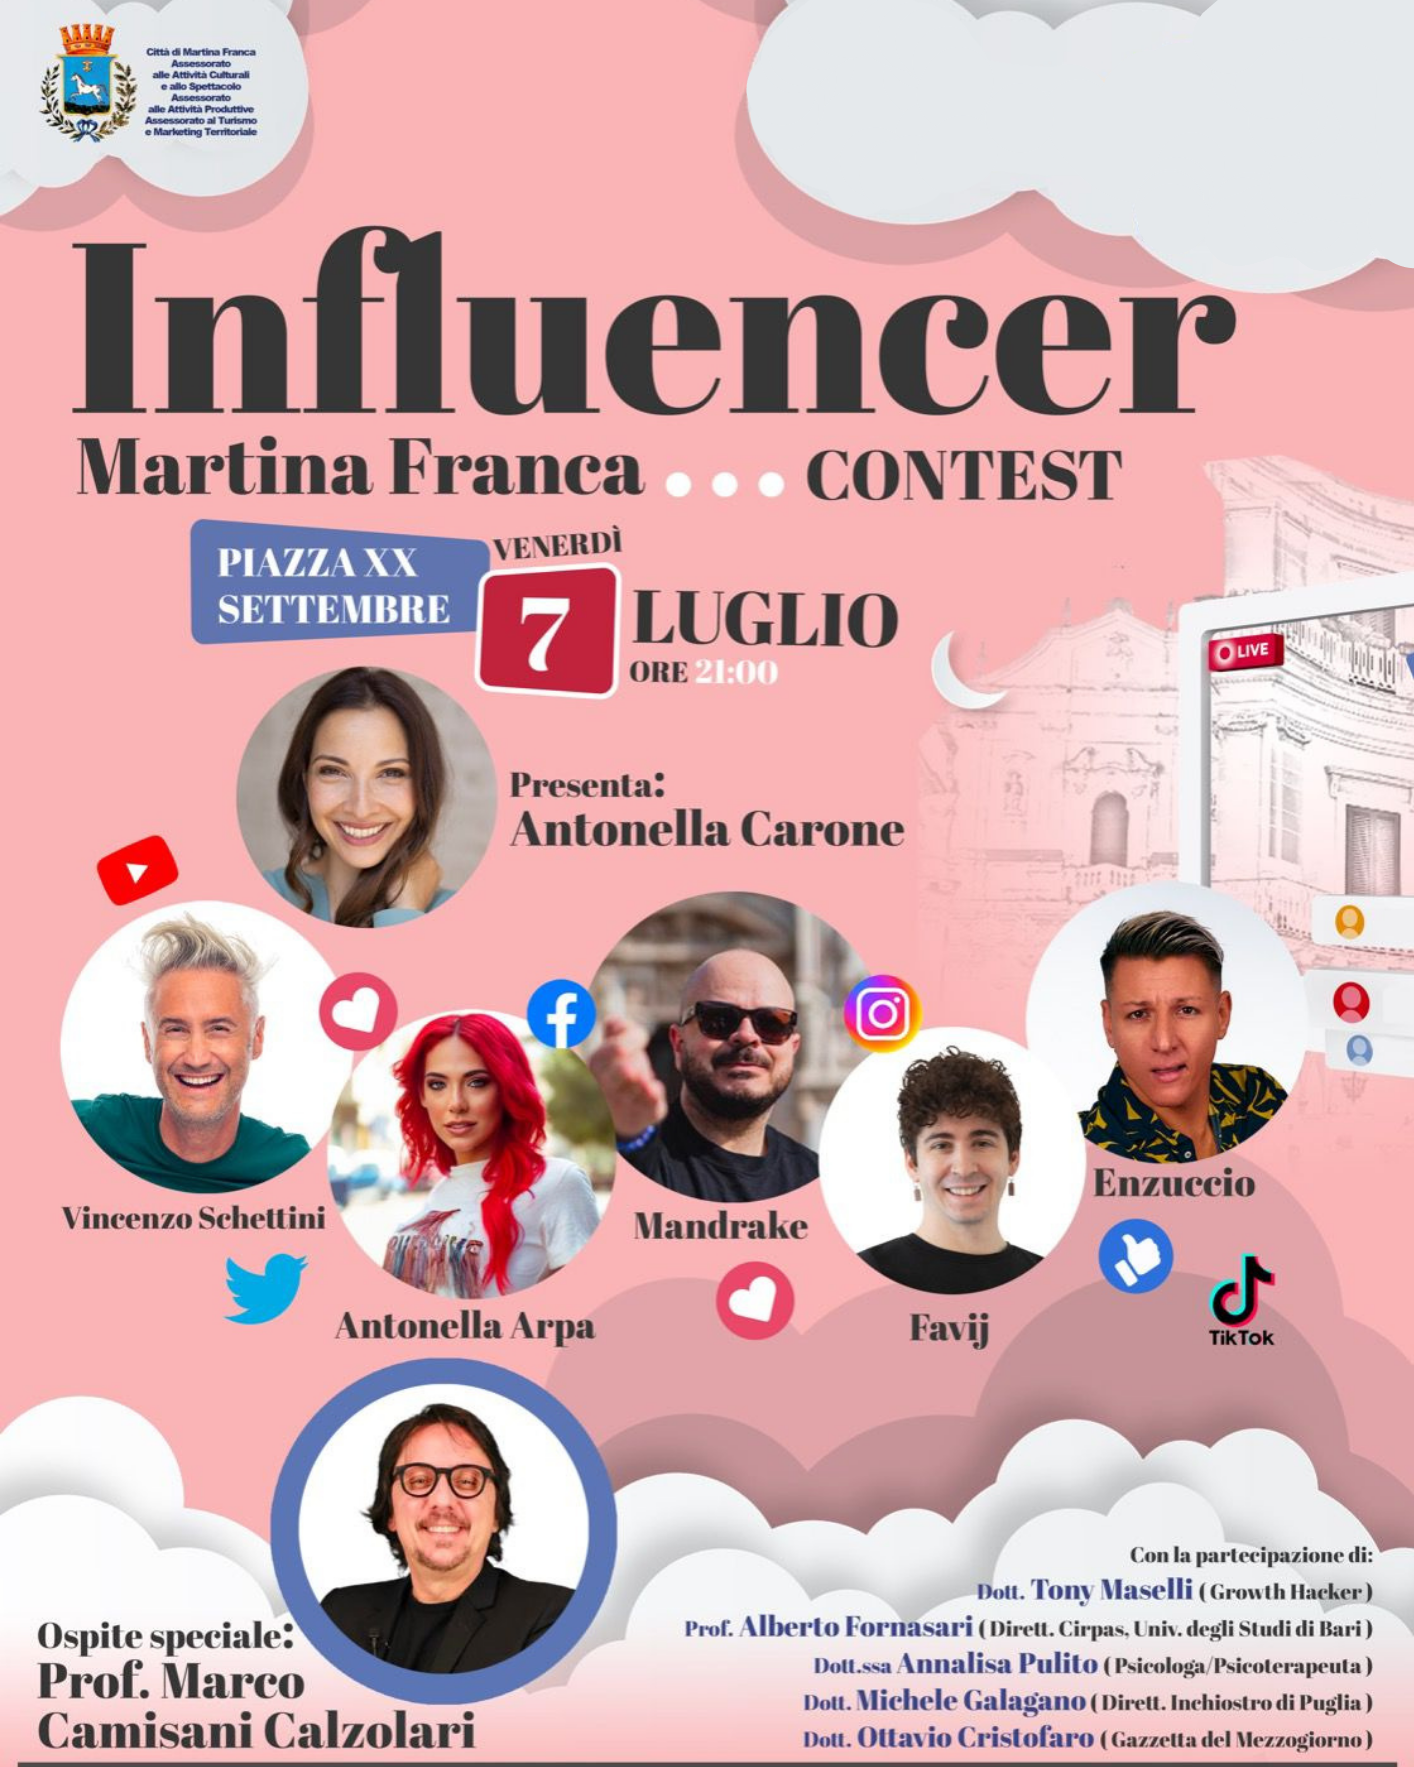 Influencer Martina Franca Contest